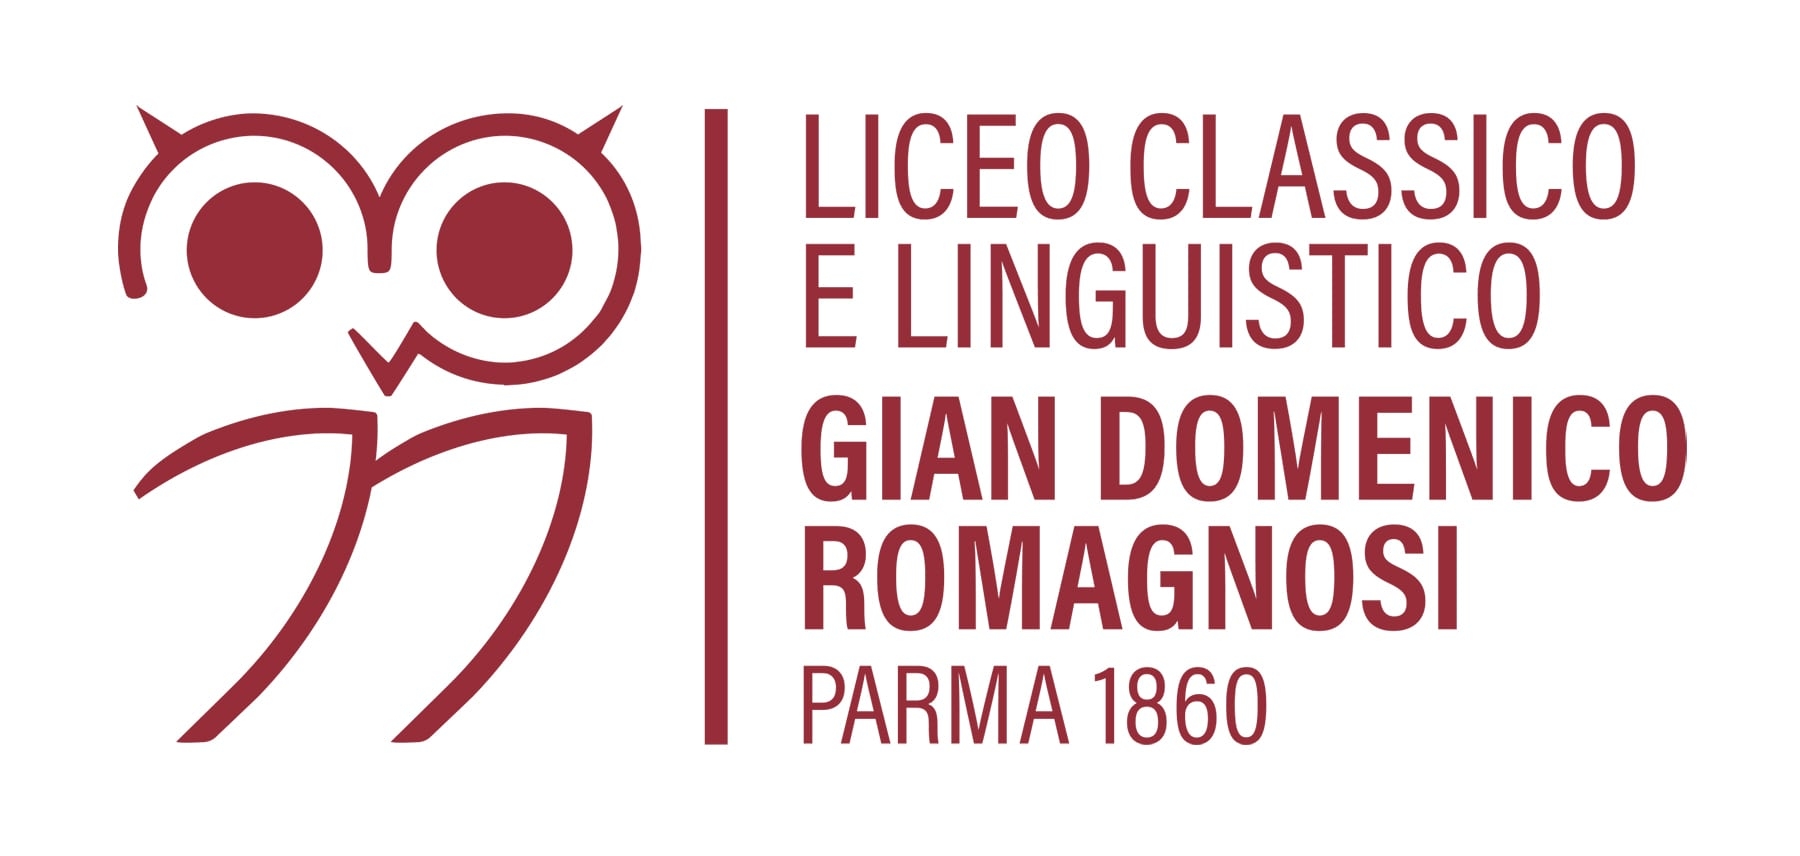 Liceo Classico Linguistico Romagnosi Parma